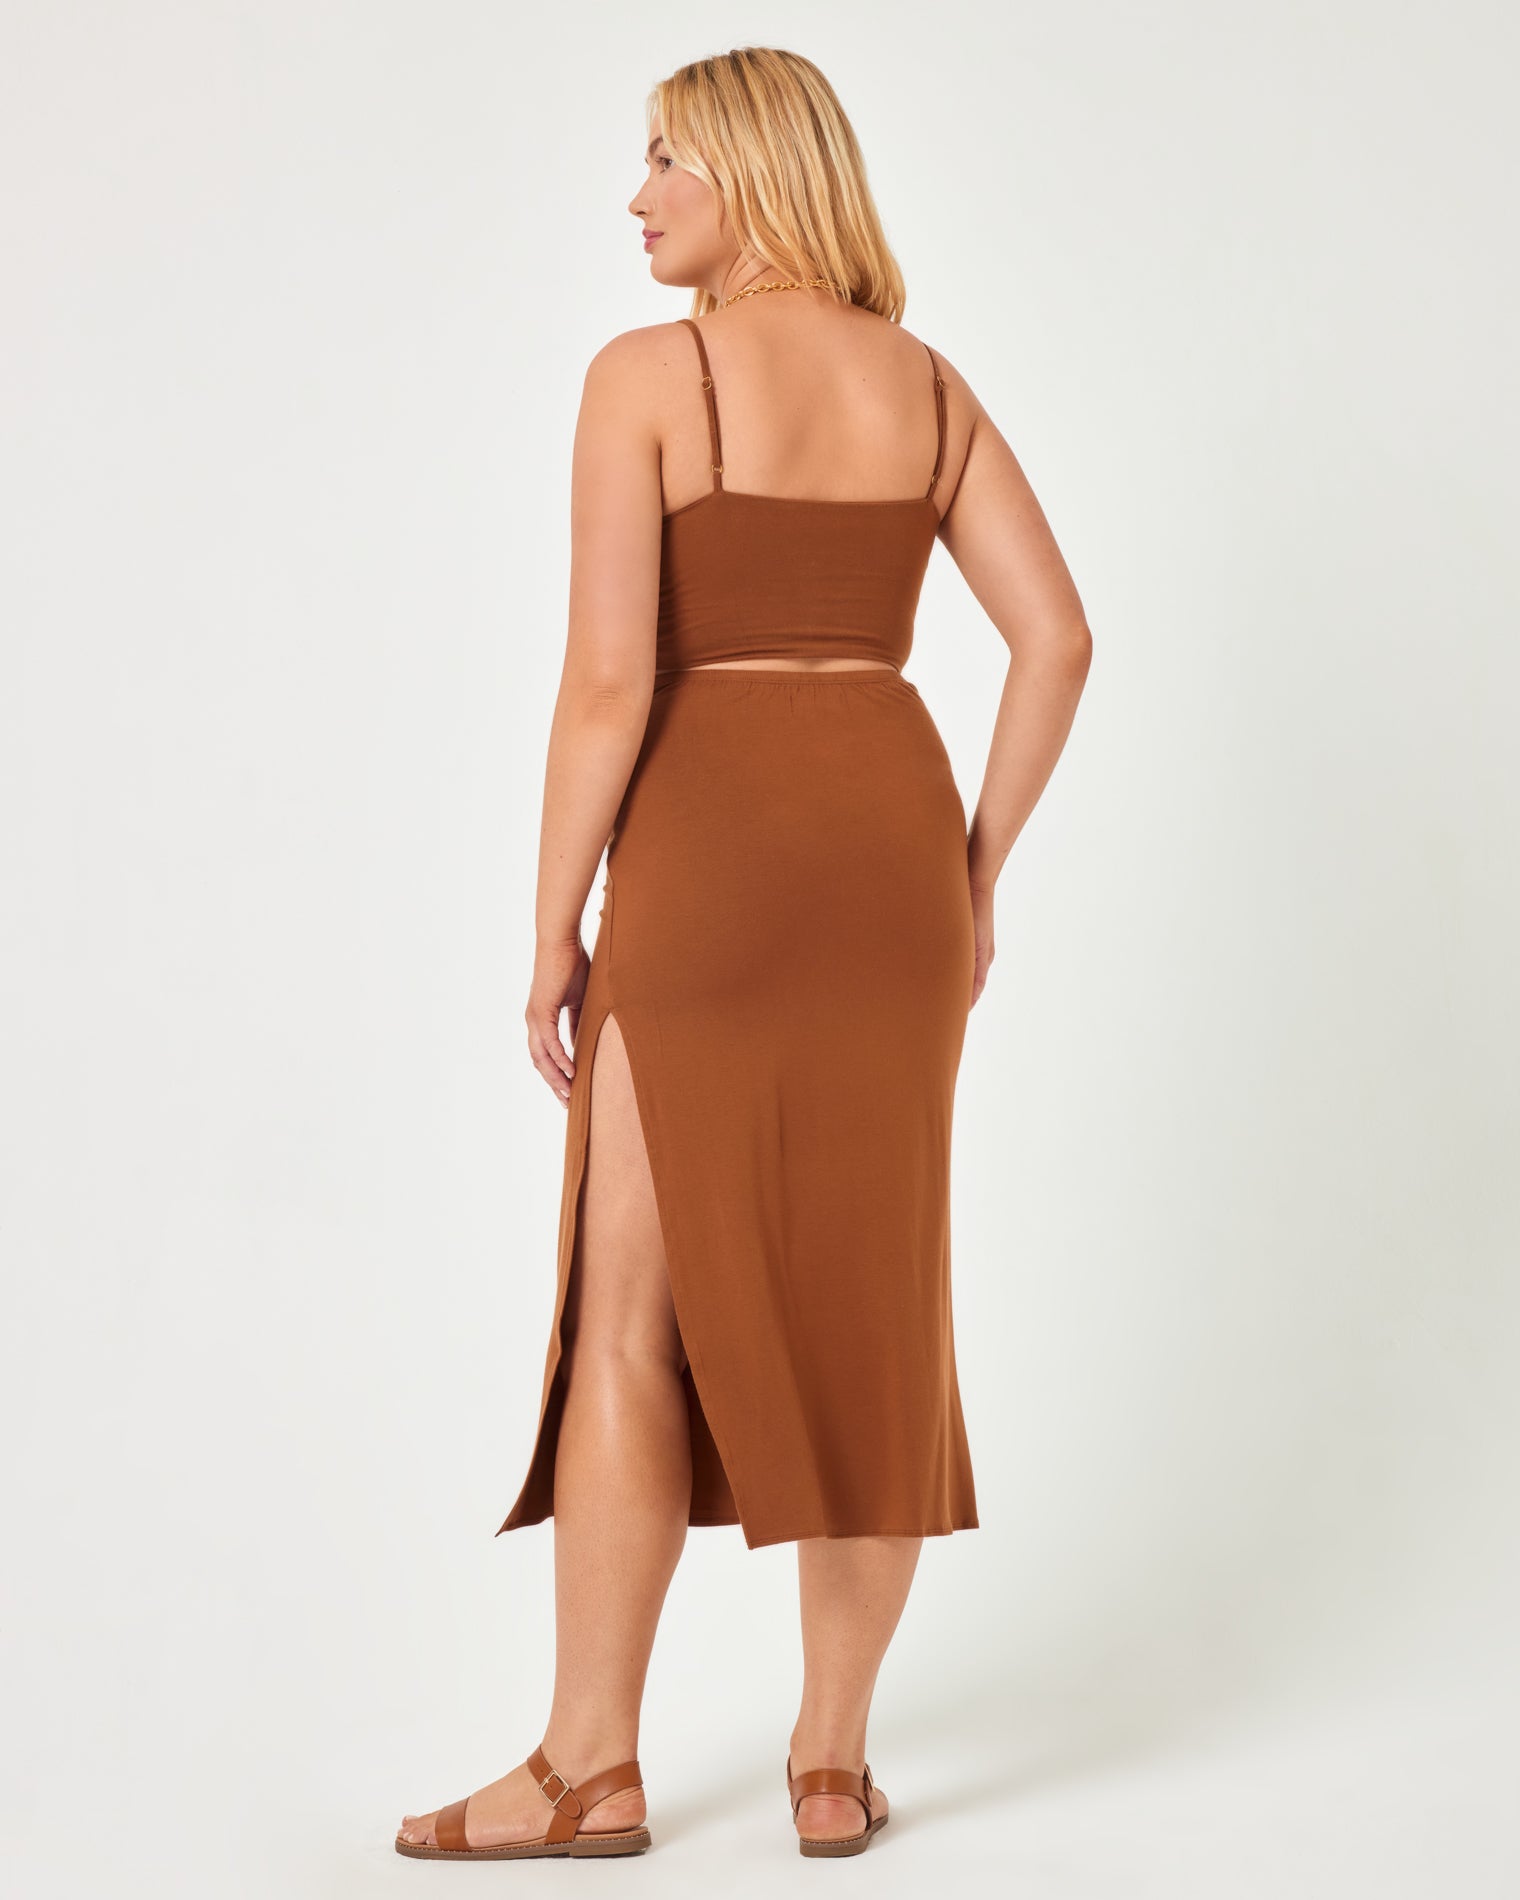 It's A Date Skirt Coffee | Model: Sydney (size: XL)